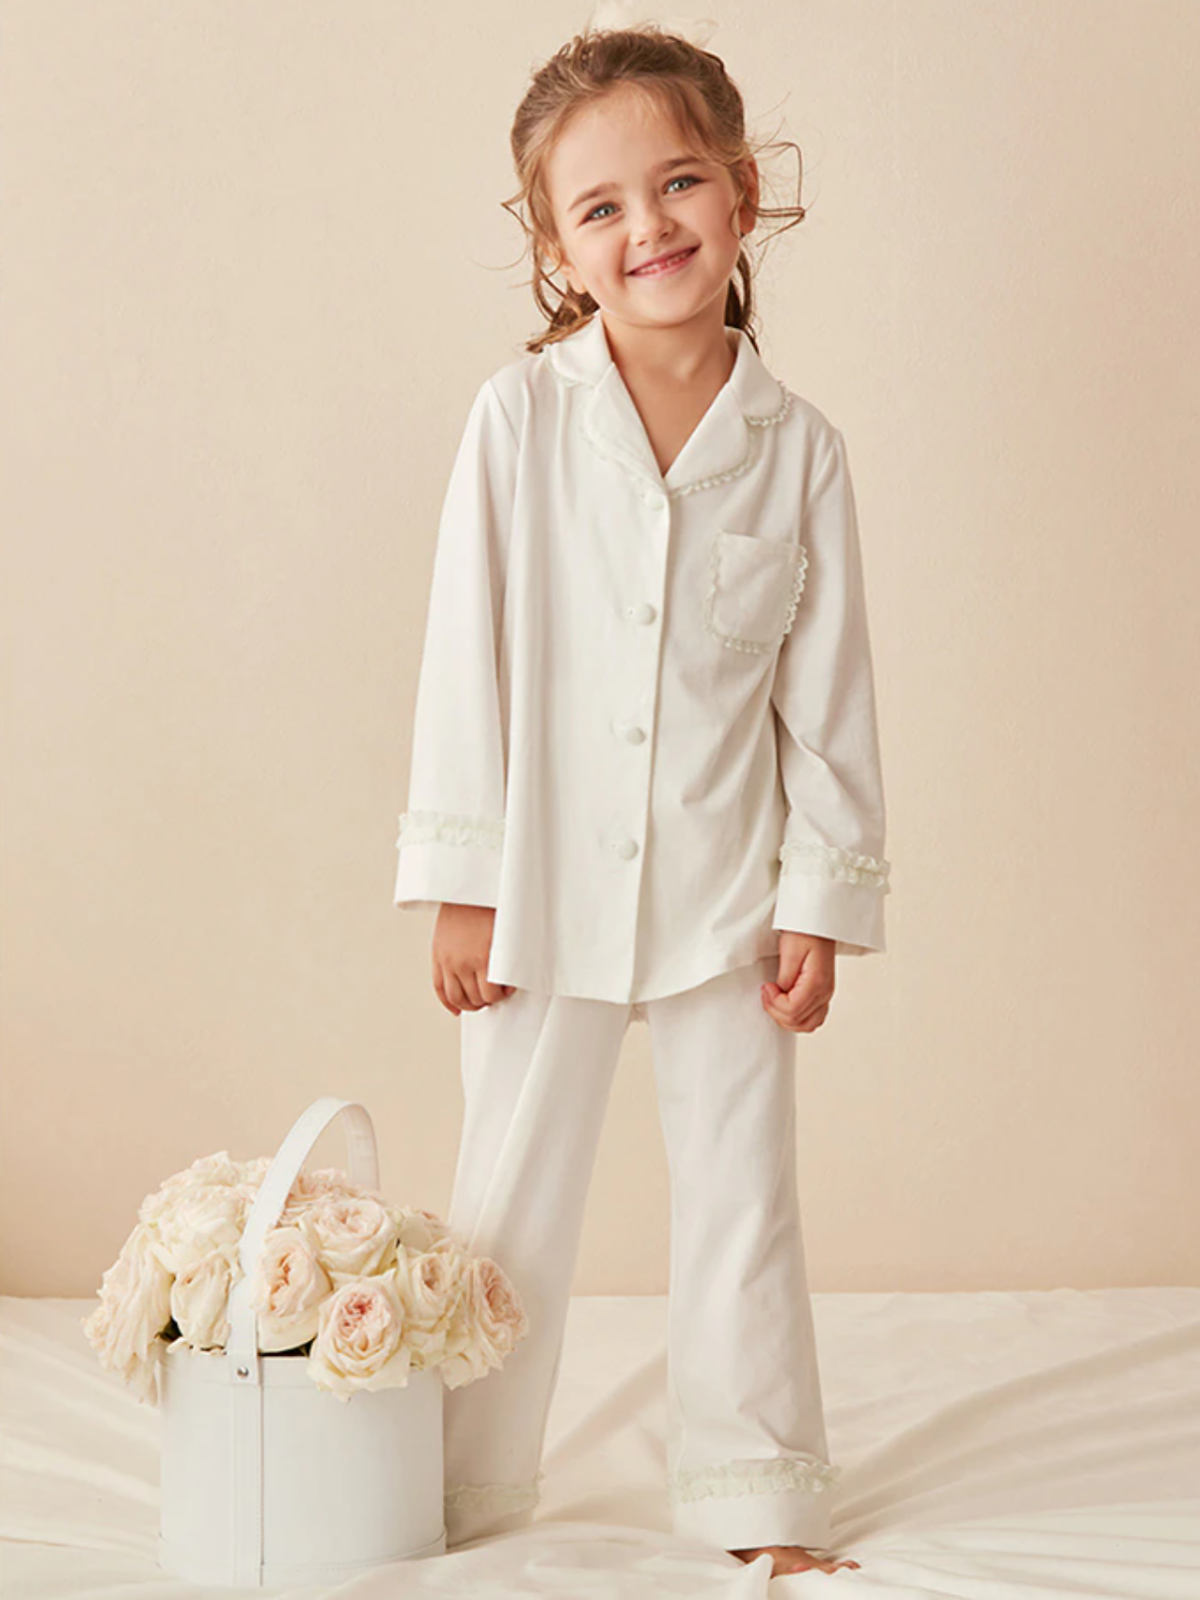 Mia Belle Girls Lace Trim Pajamas | Girls Loungewear